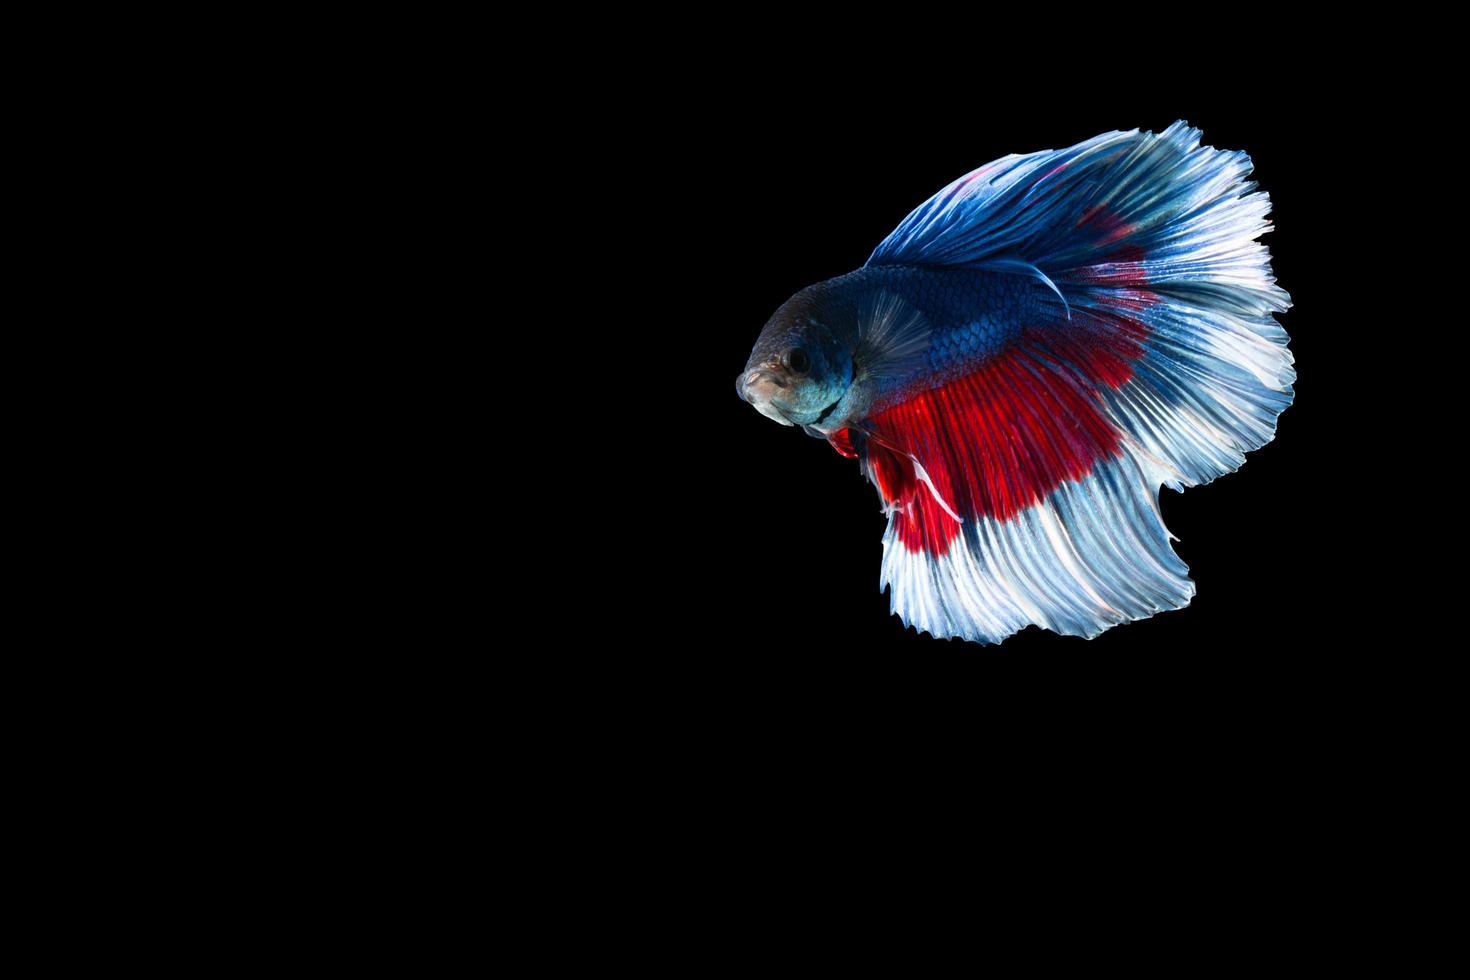 pez betta de media luna con rayas azules y rojas foto